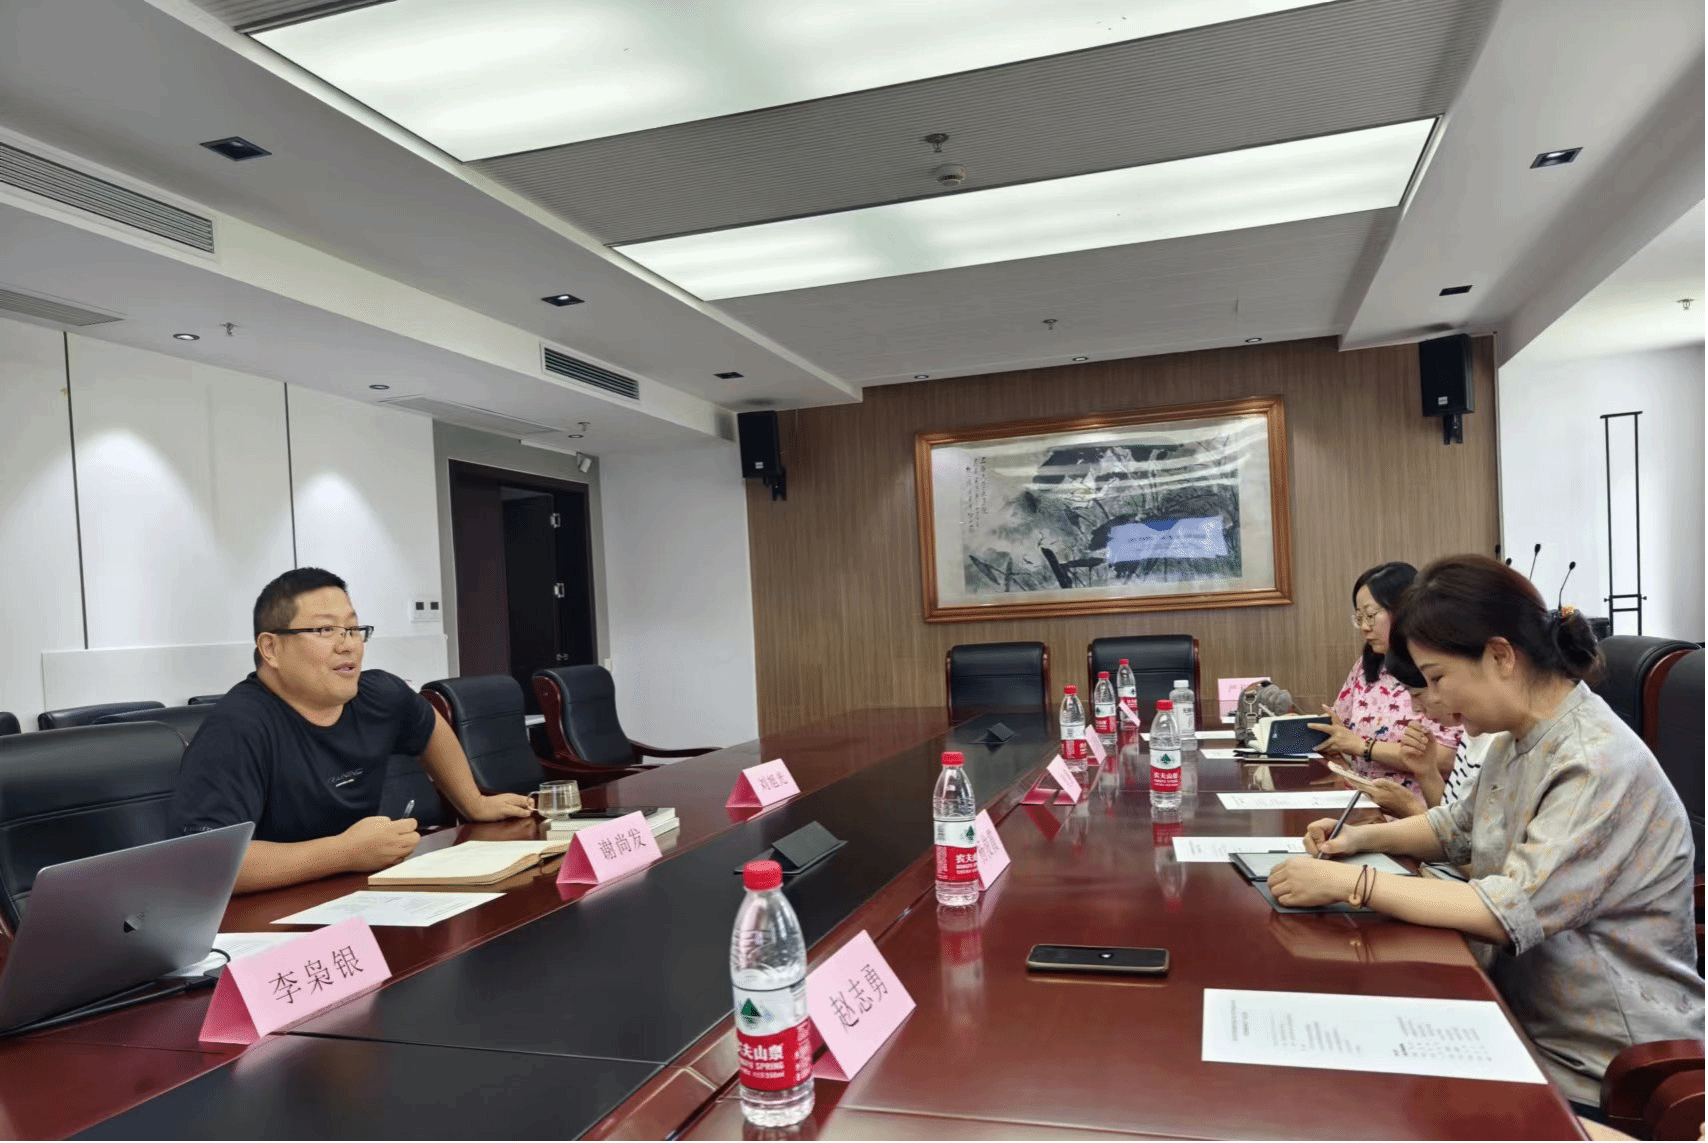 李枭银博士则为团队成员介绍了上海大学文学院创意写作方向近年来